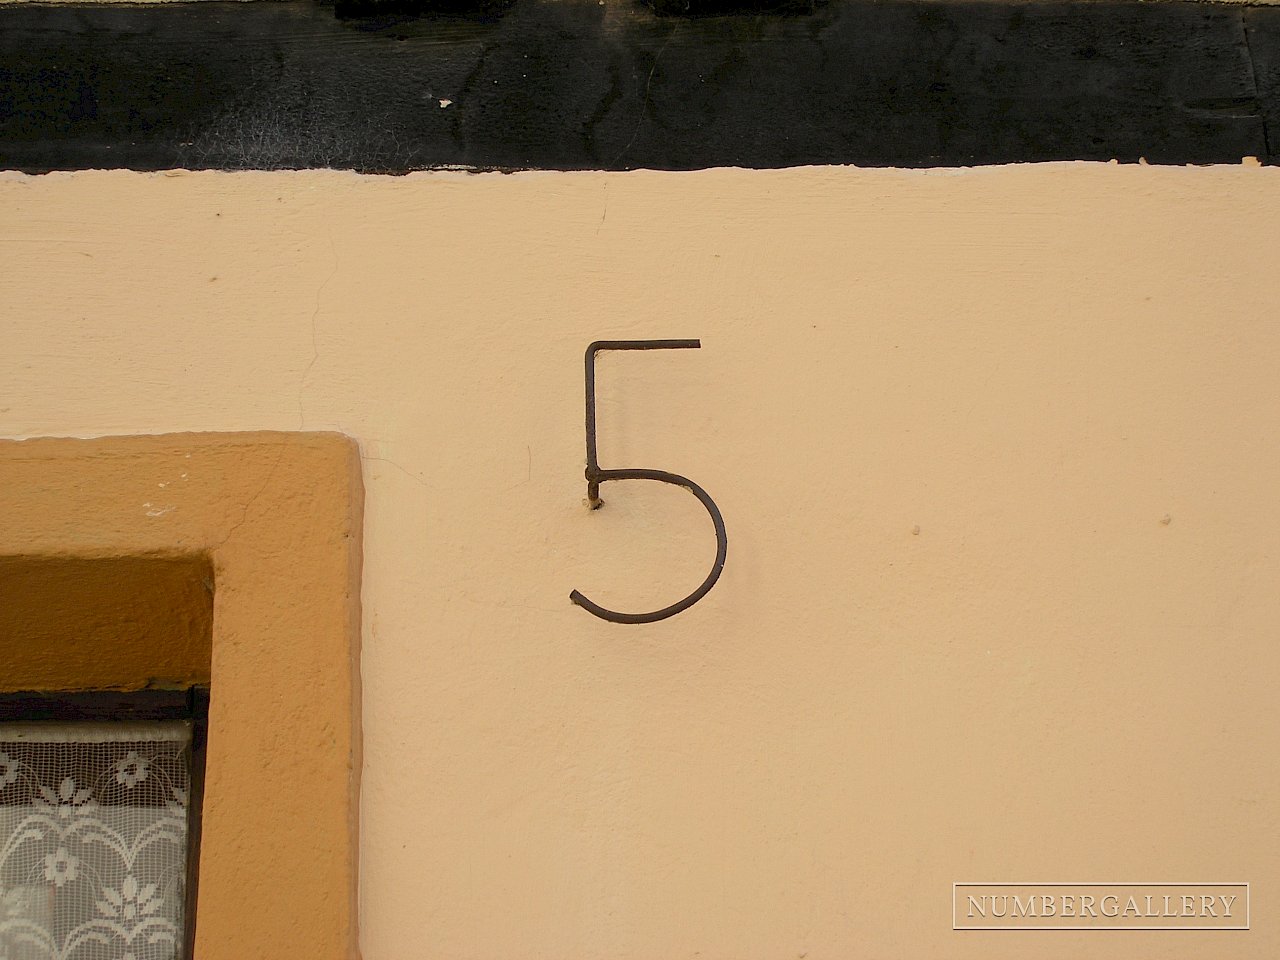 Hausnummer in Wismar